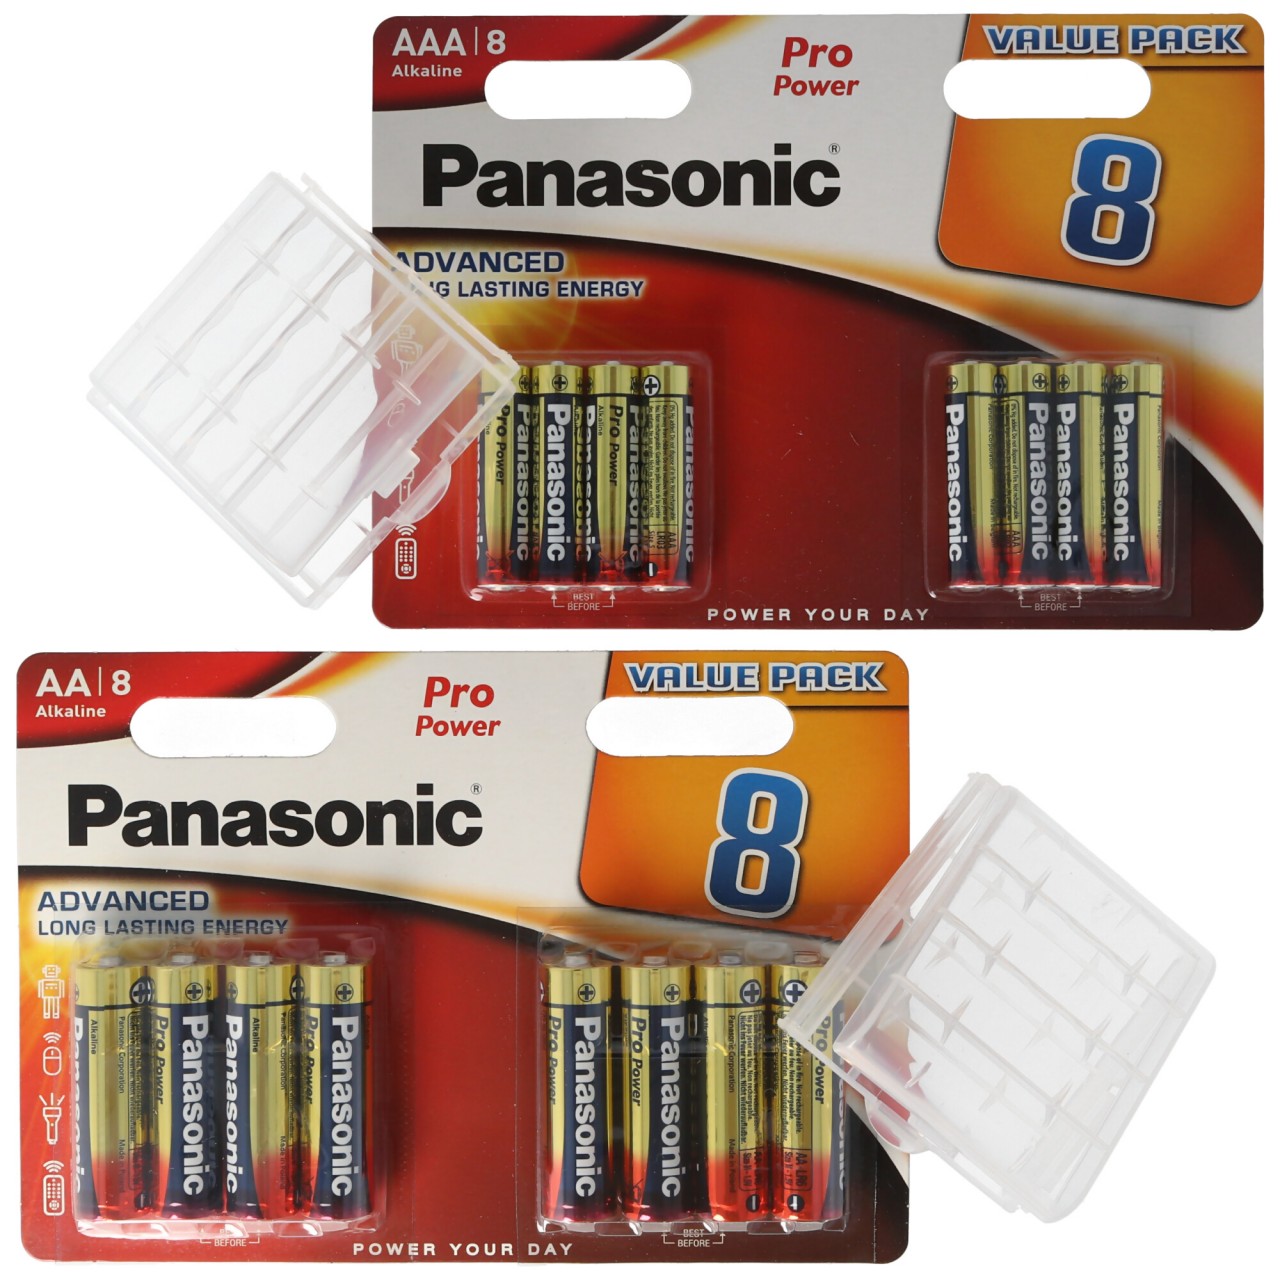 „ALL YOU NEED“-Paket mit 8x Panasonic AA Batterien, 8x Panasonic AAA Batterien und 2x Aufbewahrungsboxen